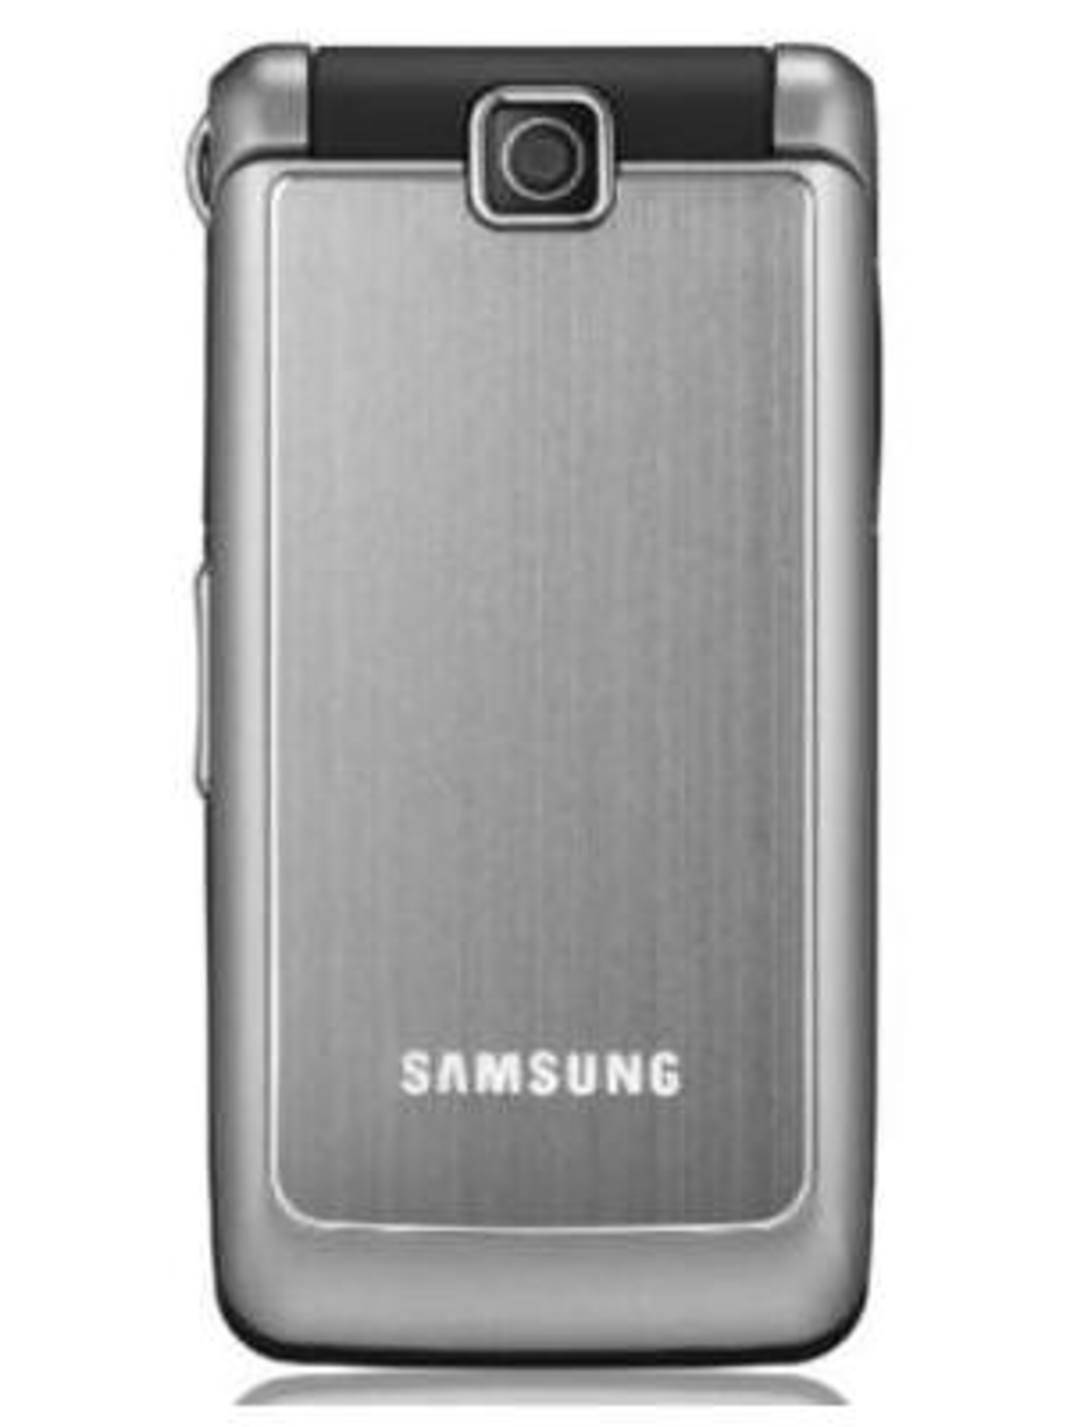 Samsung SGH s3600